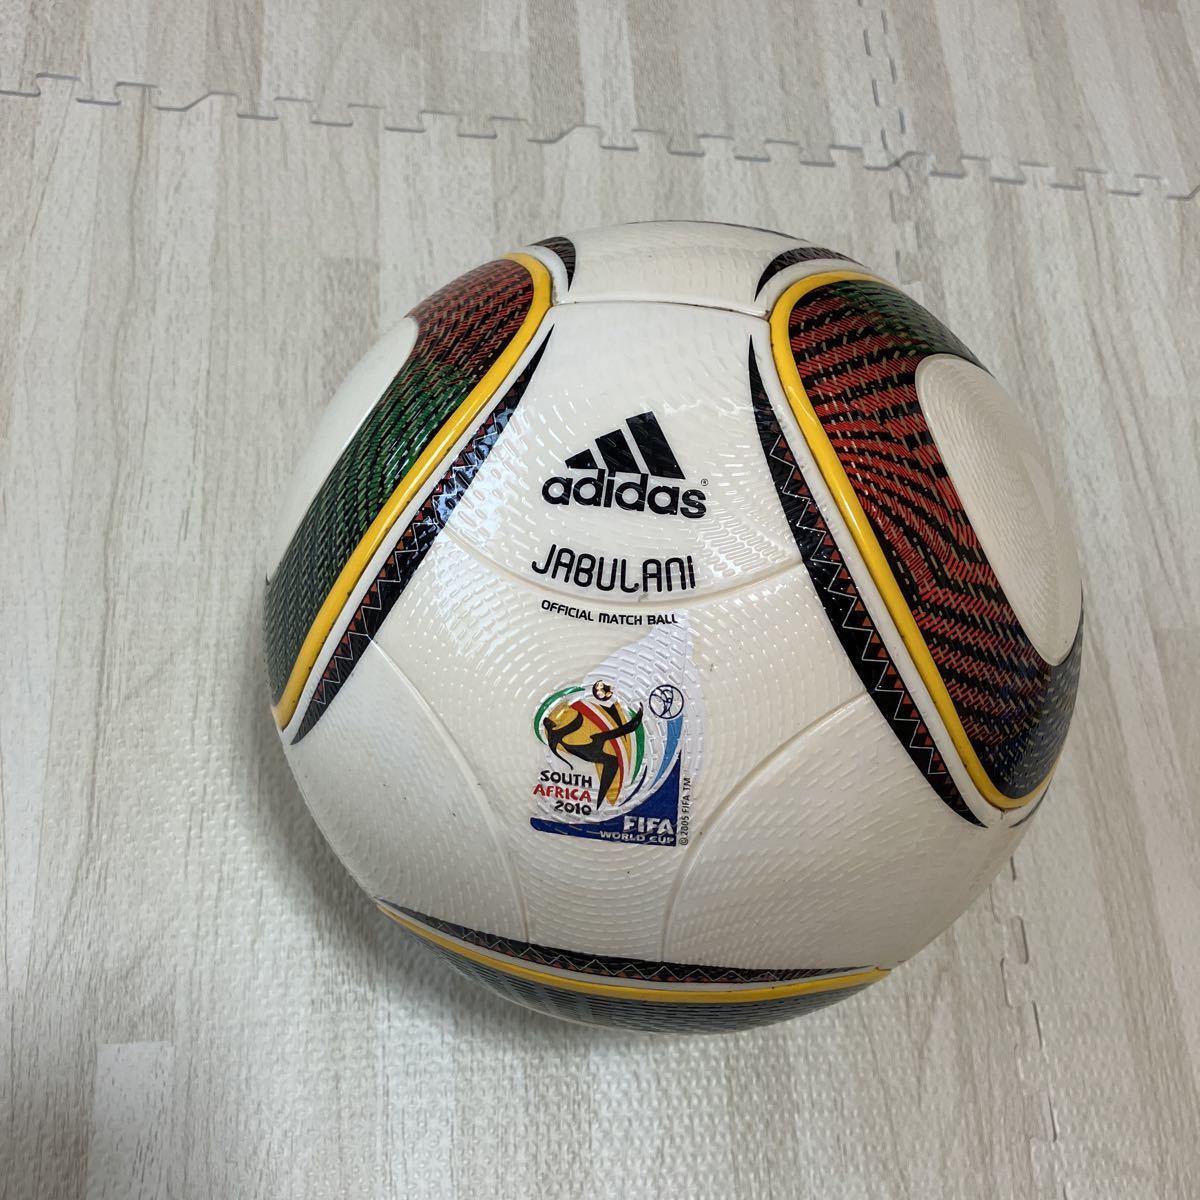 ジャブラニ 南アフリカワールドカップ 公式試合球 アディダス サッカー